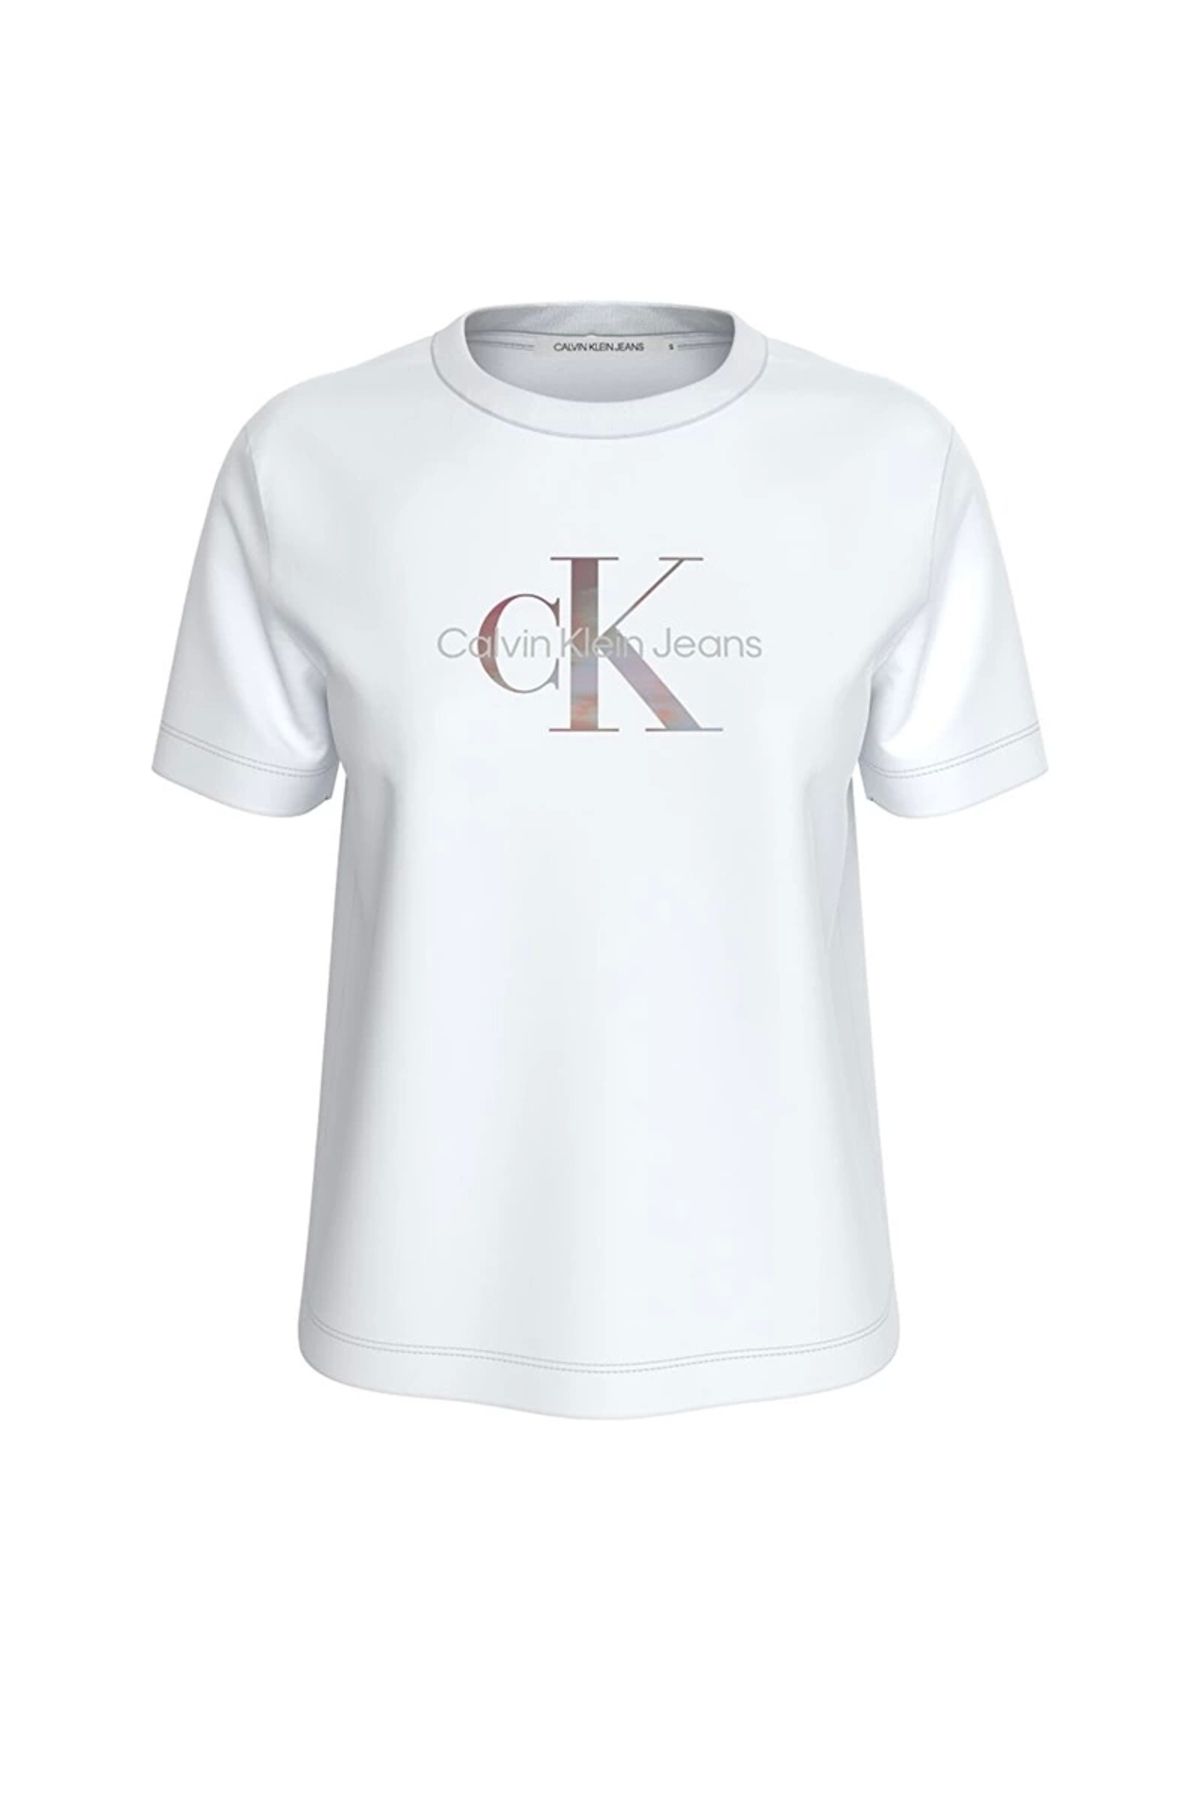 Calvin Klein Kadın Mono Logolu Beyaz T-Shirt